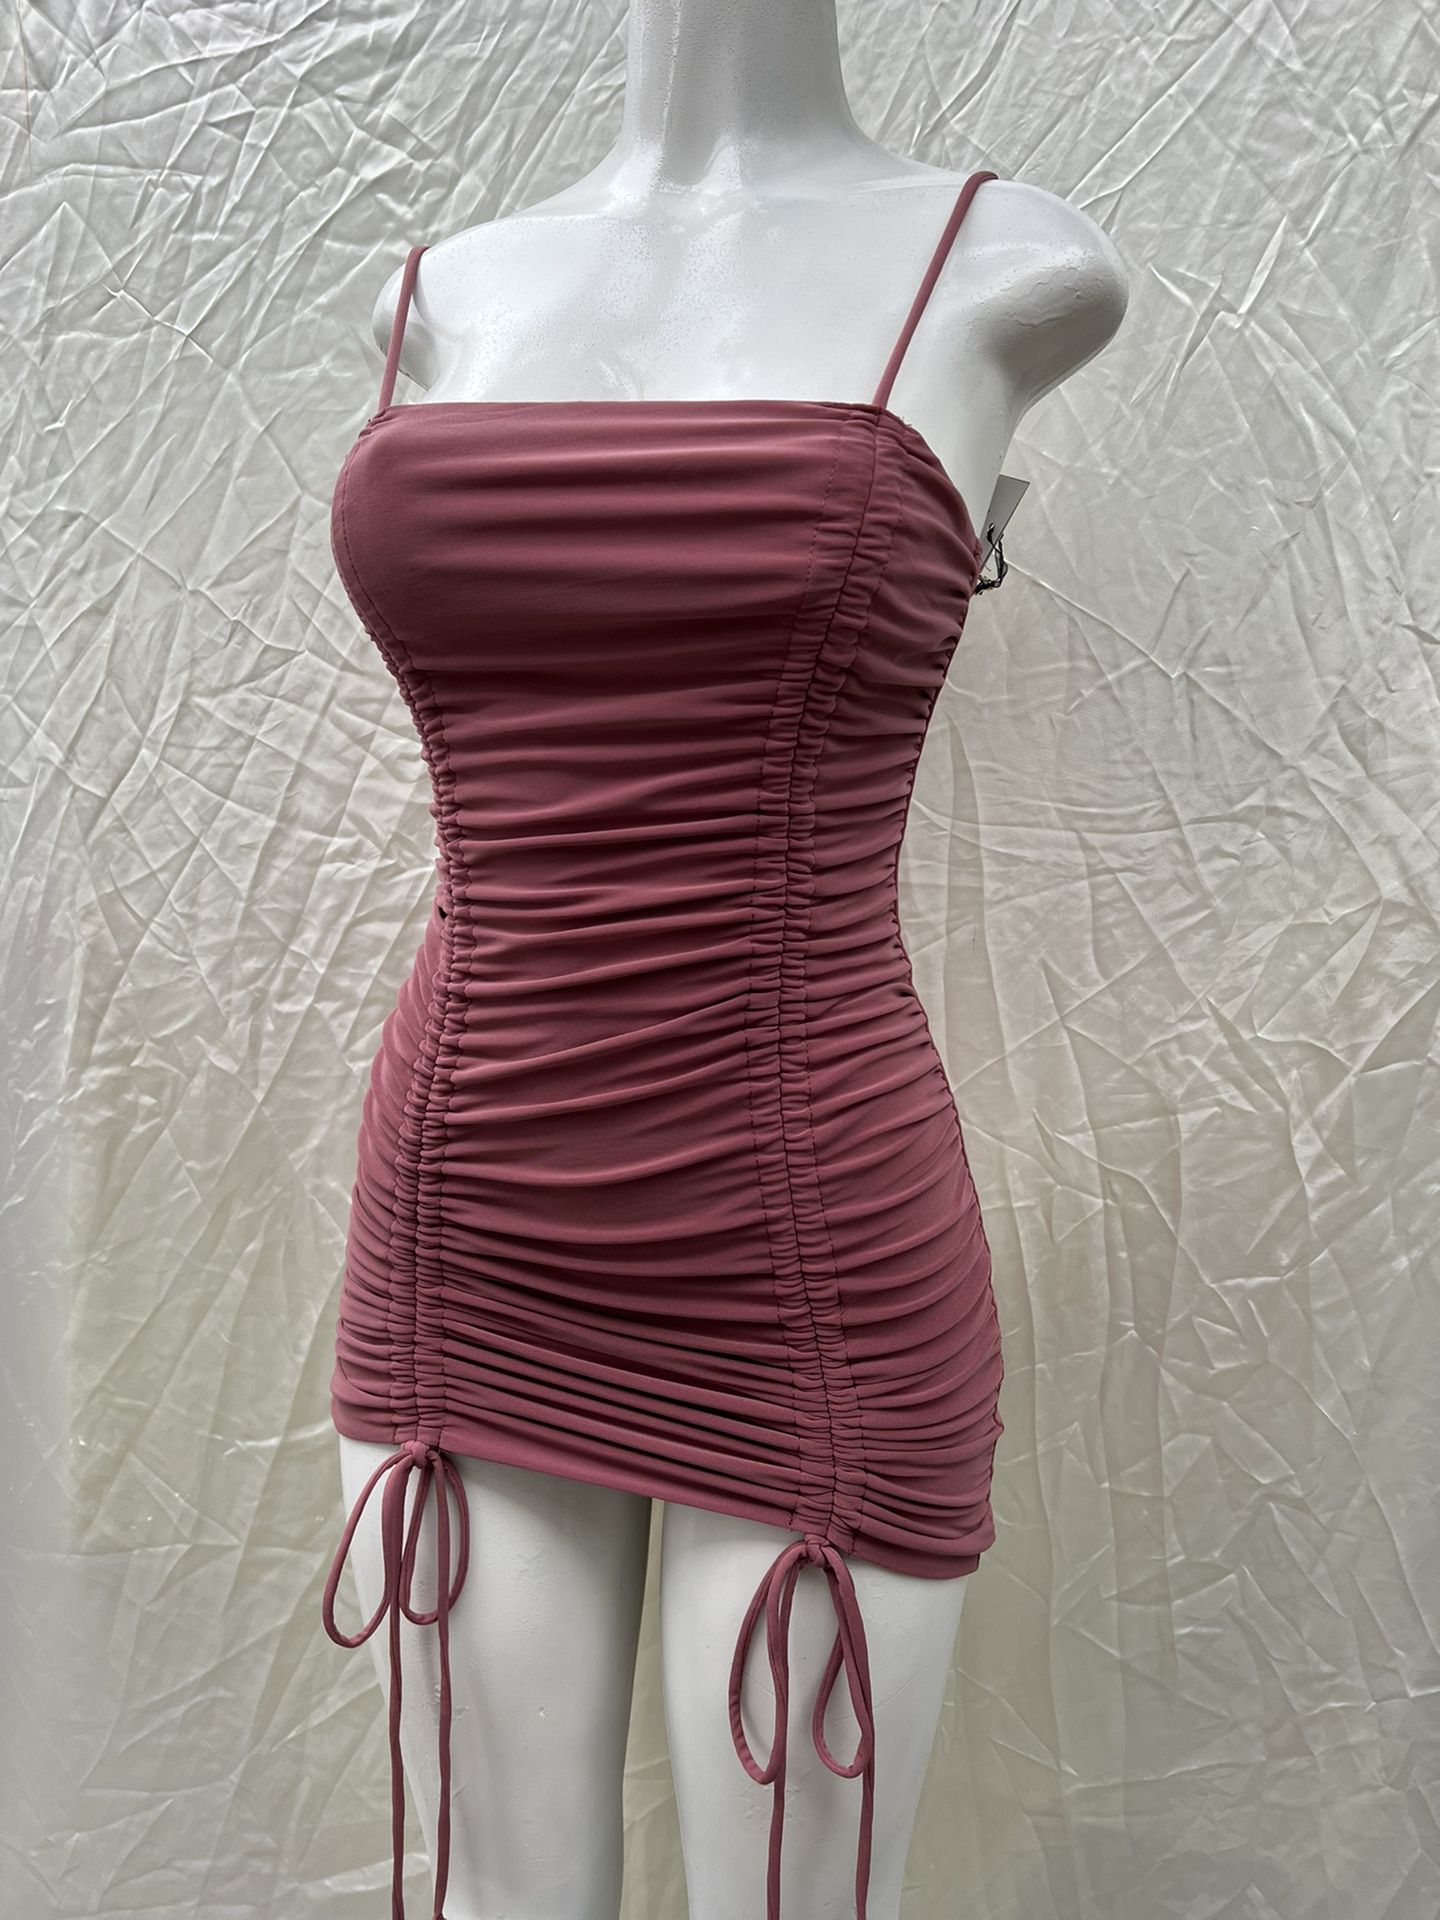 Rose Blush String Dress